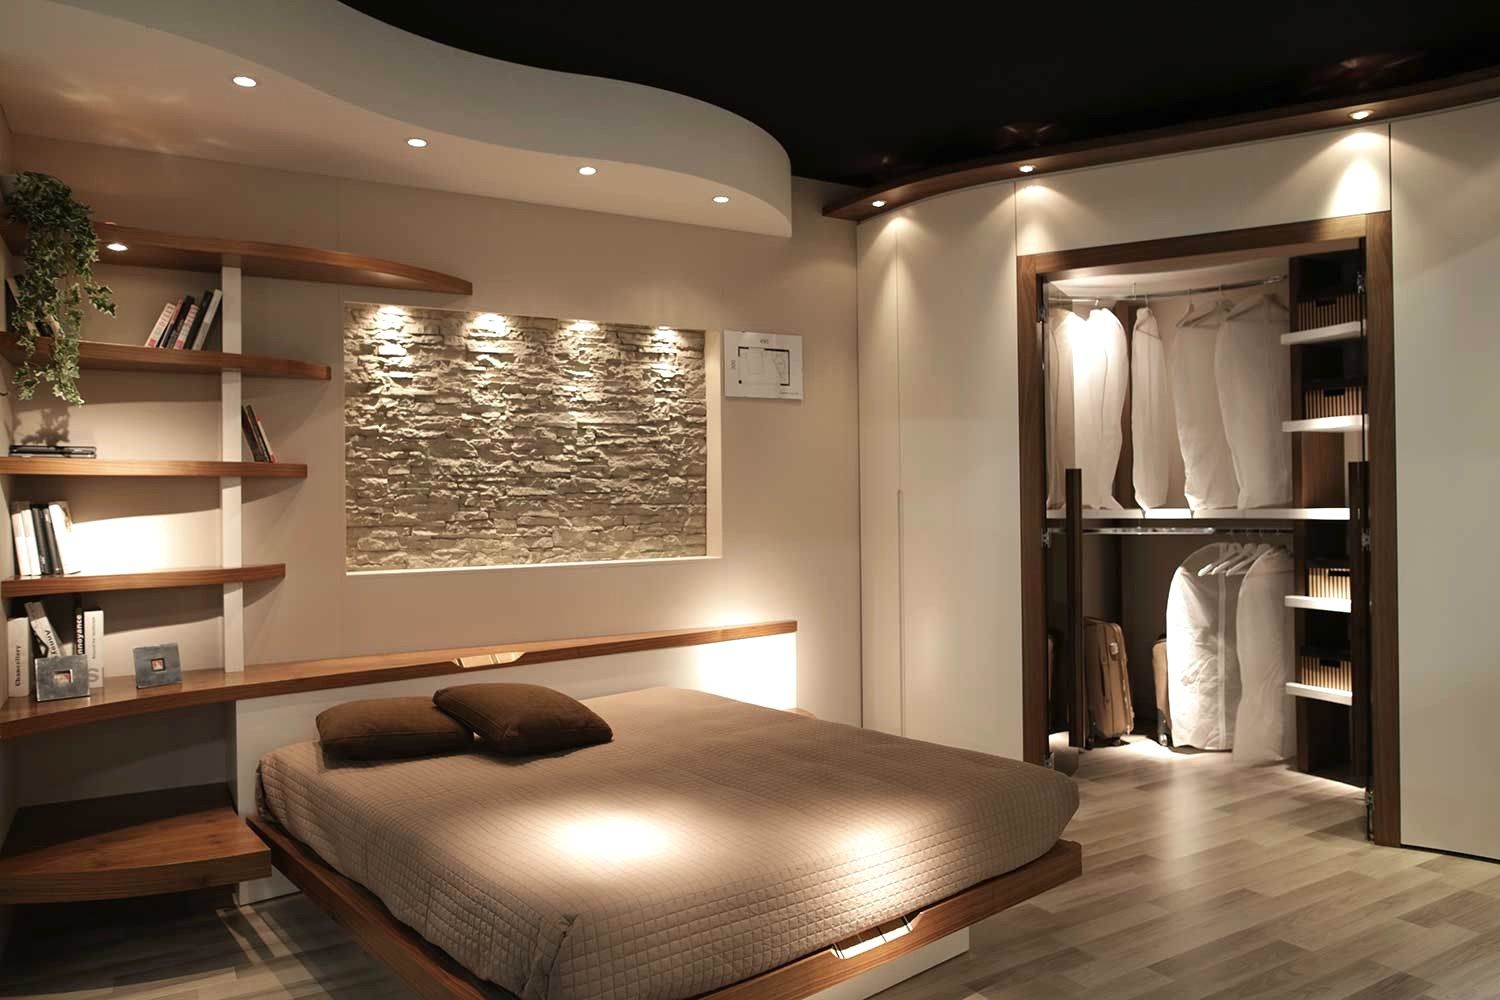 Спальня с гардеробной комнатой